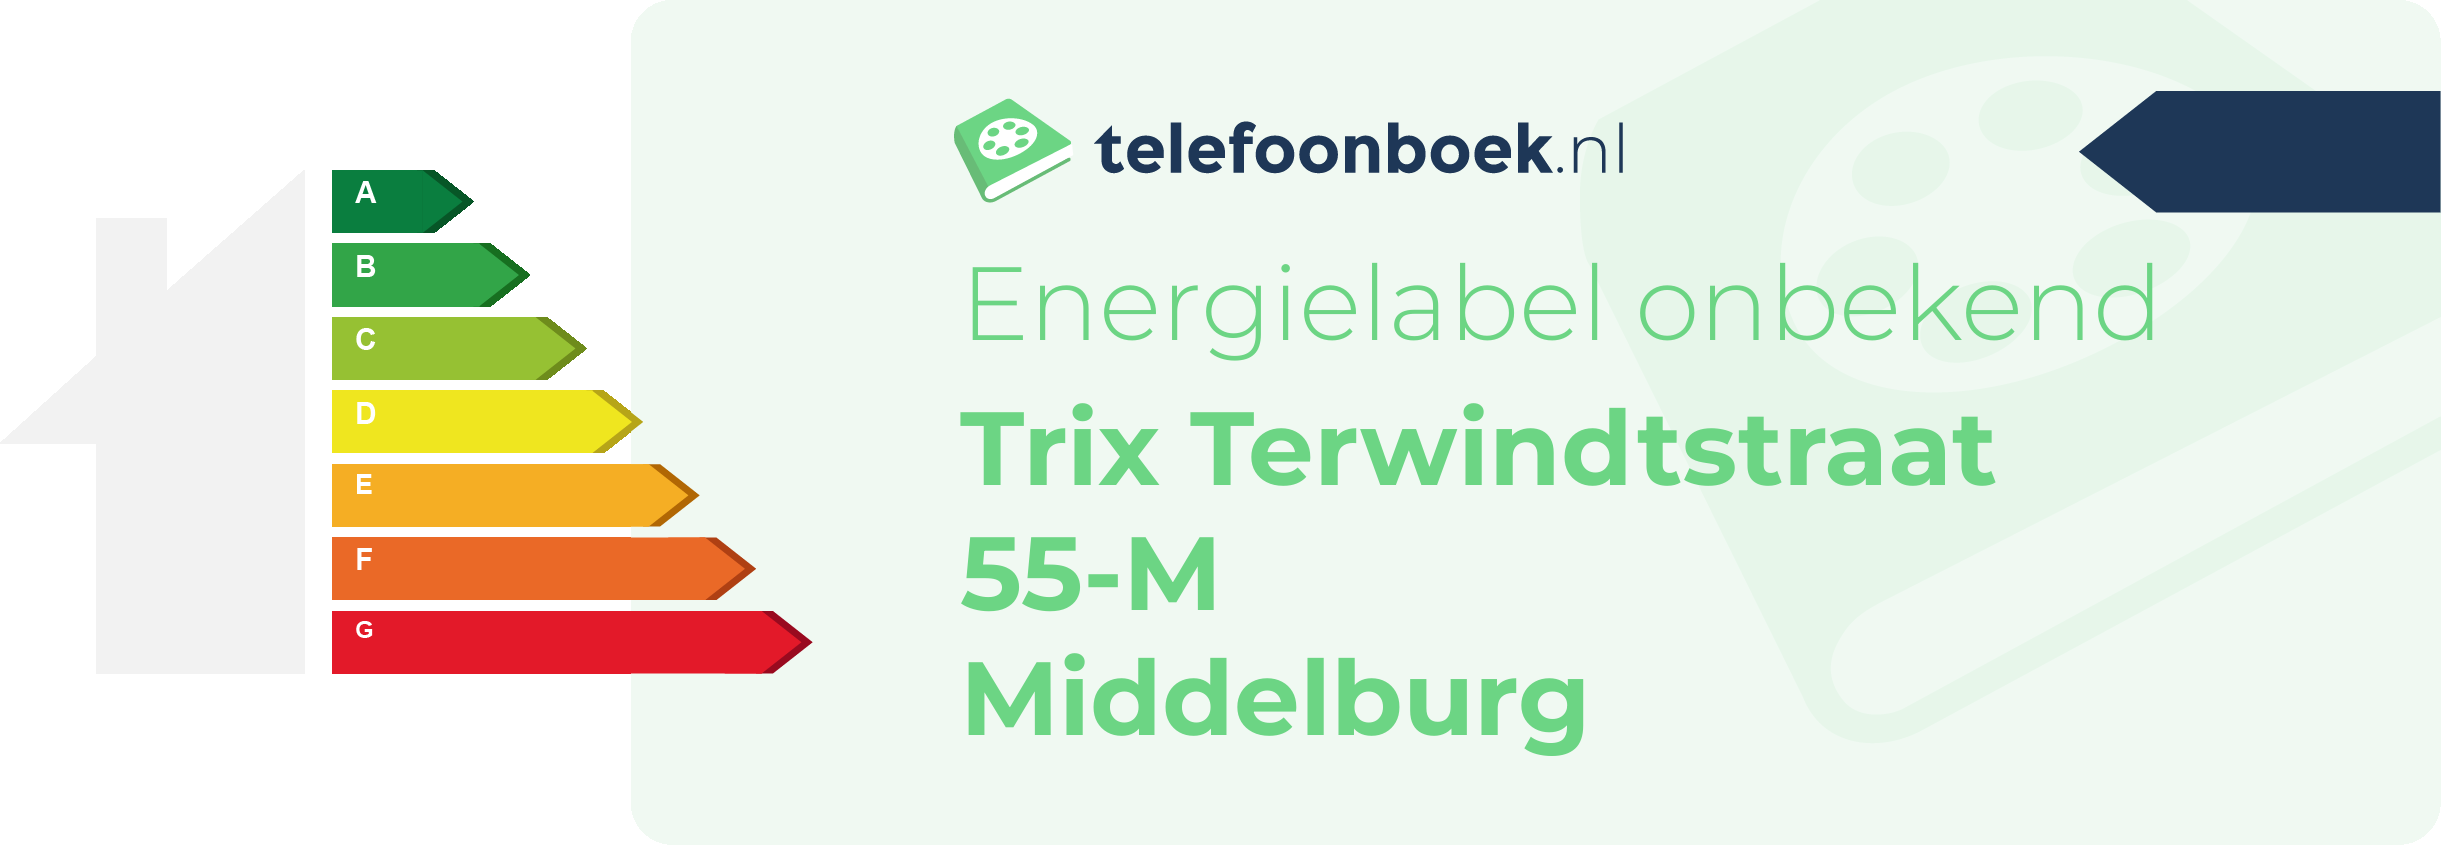 Energielabel Trix Terwindtstraat 55-M Middelburg